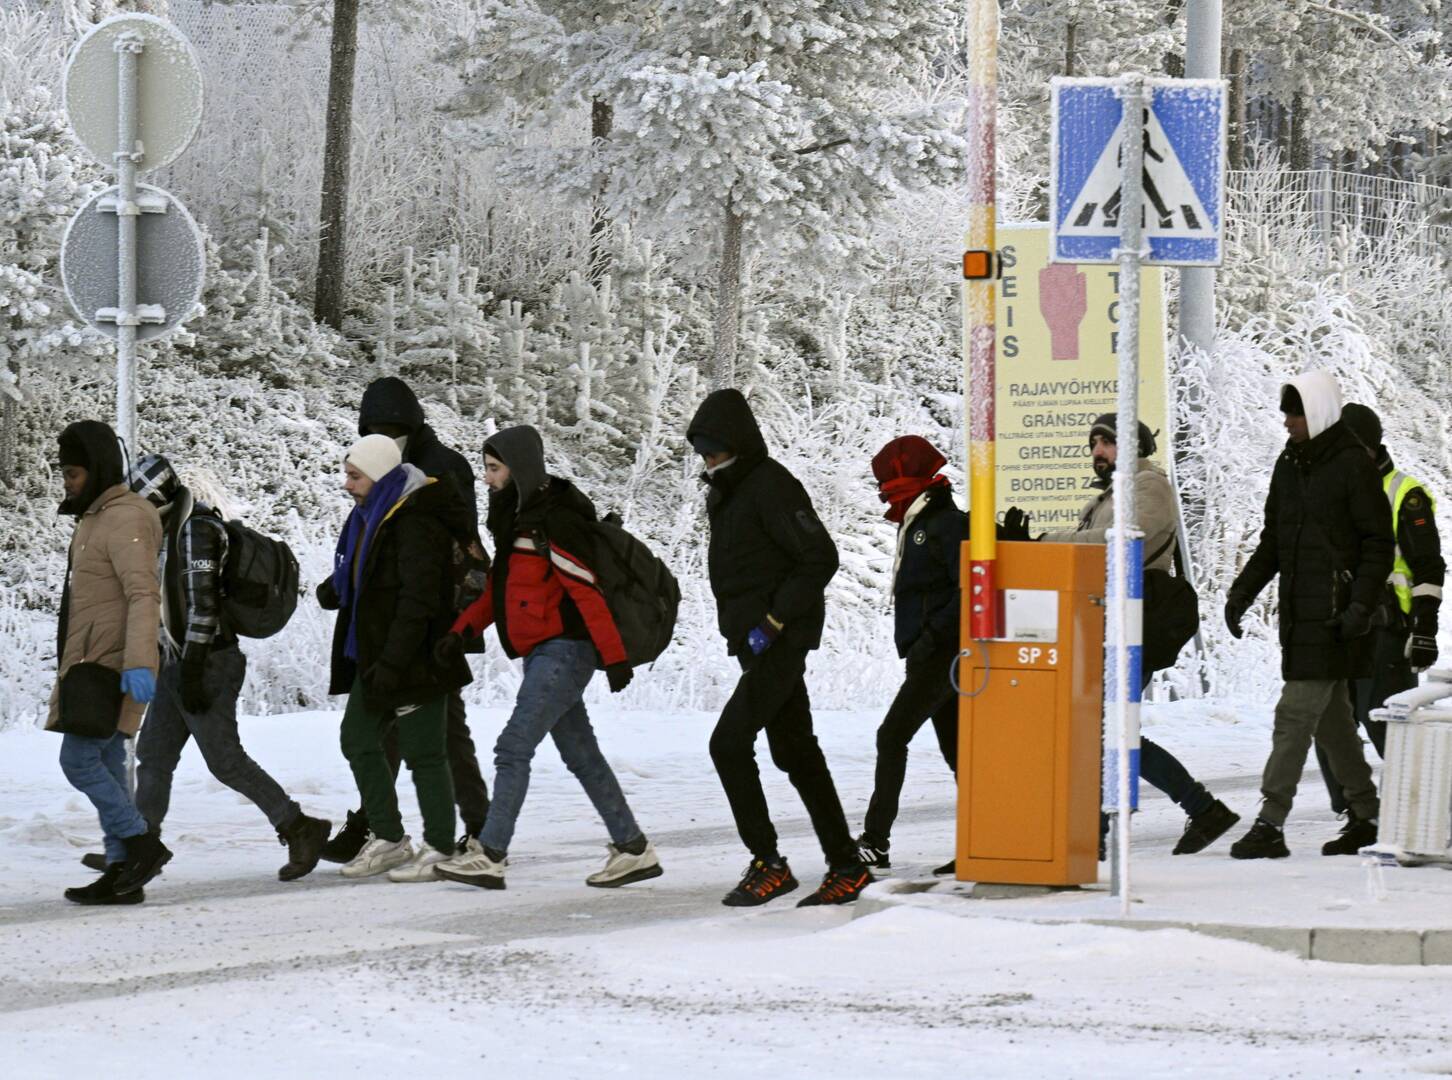 الداخلية الفنلندية تقترح مشروع قانون يحظر حركة اللاجئين داخل البلاد وفي أوروبا